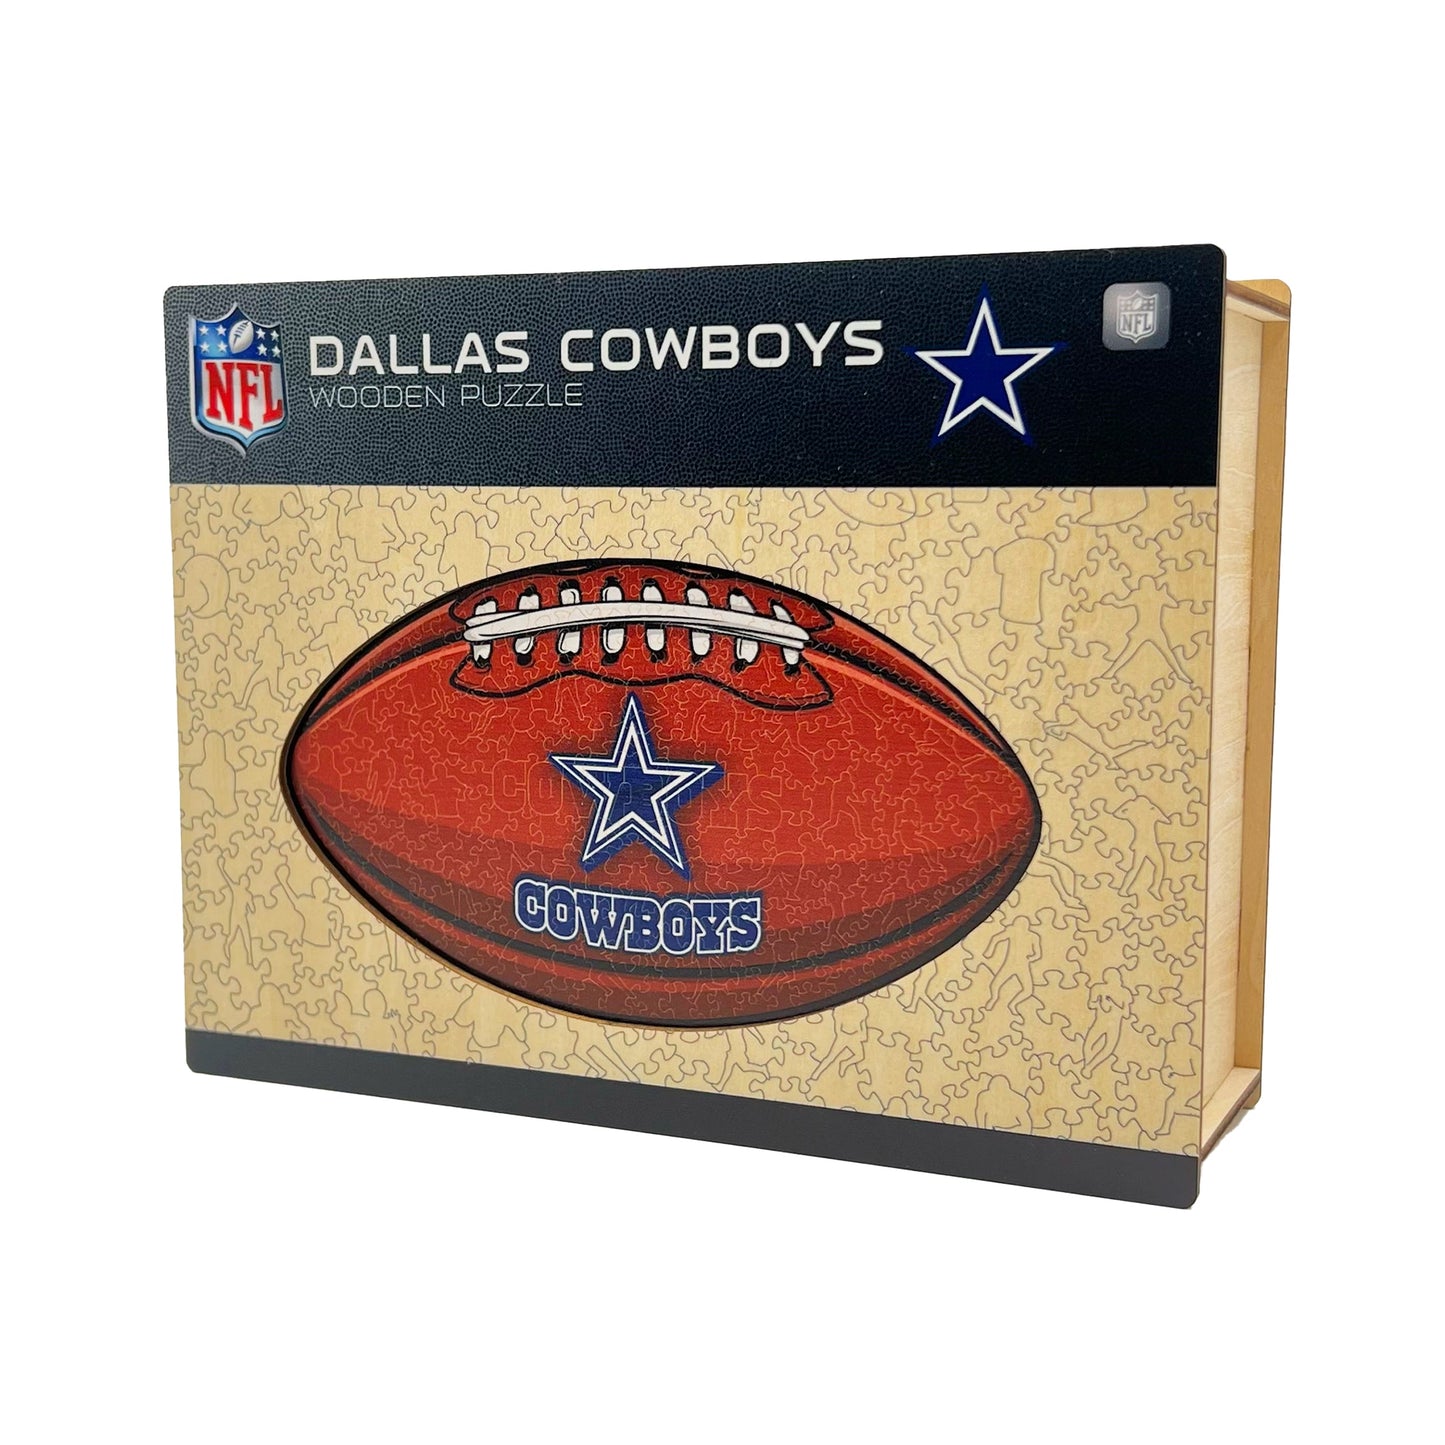 Dallas Cowboys - Wooden Puzzle